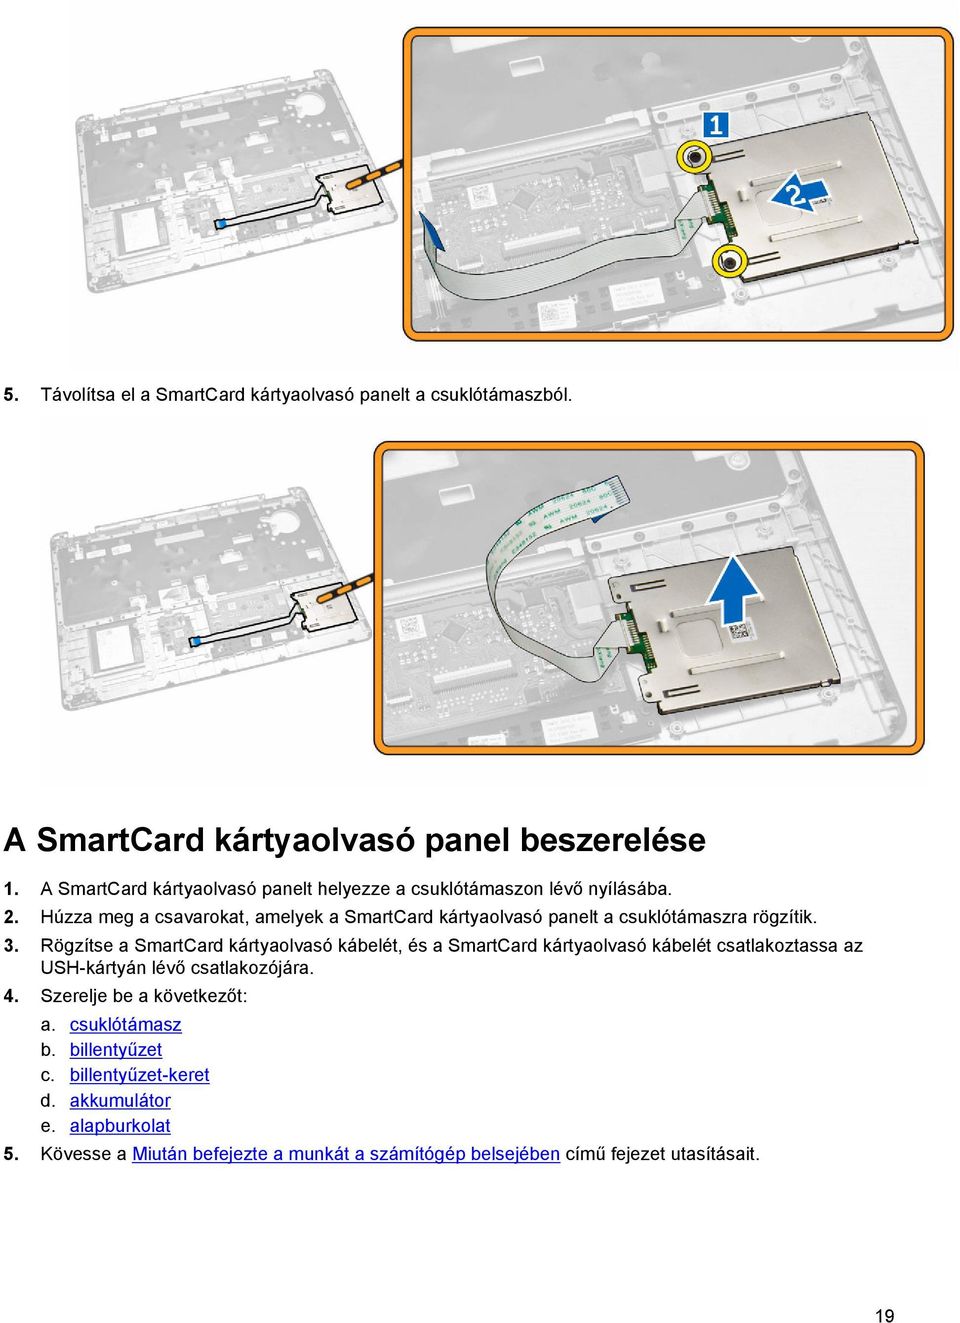 Húzza meg a csavarokat, amelyek a SmartCard kártyaolvasó panelt a csuklótámaszra rögzítik. 3.